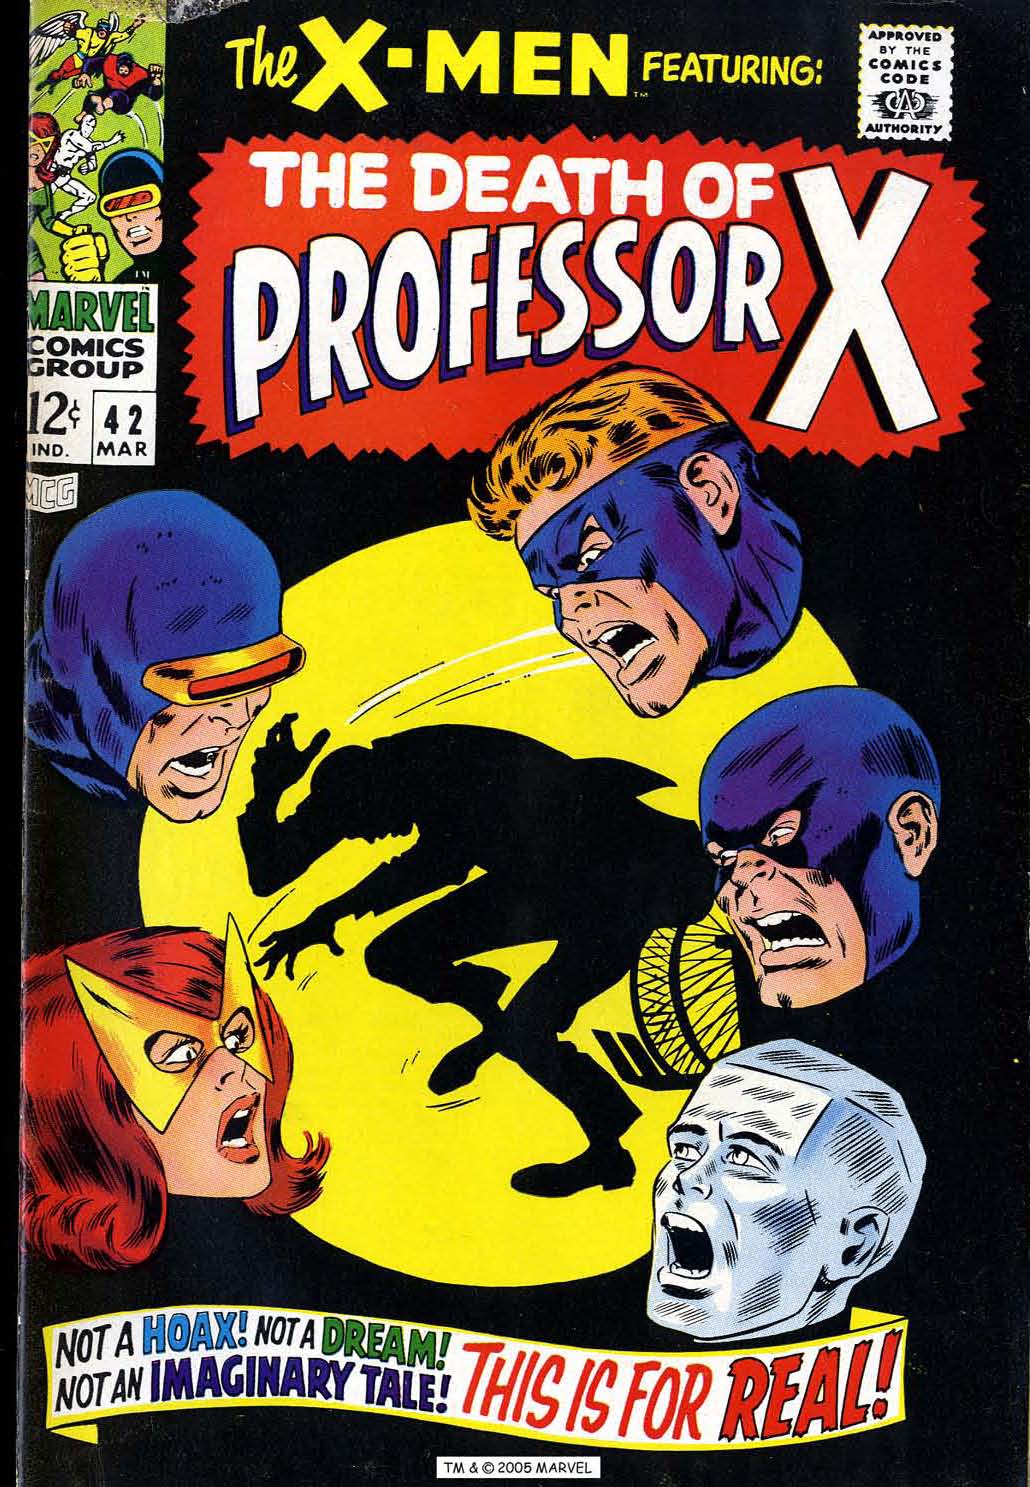 X-Men Vol. 1 #42